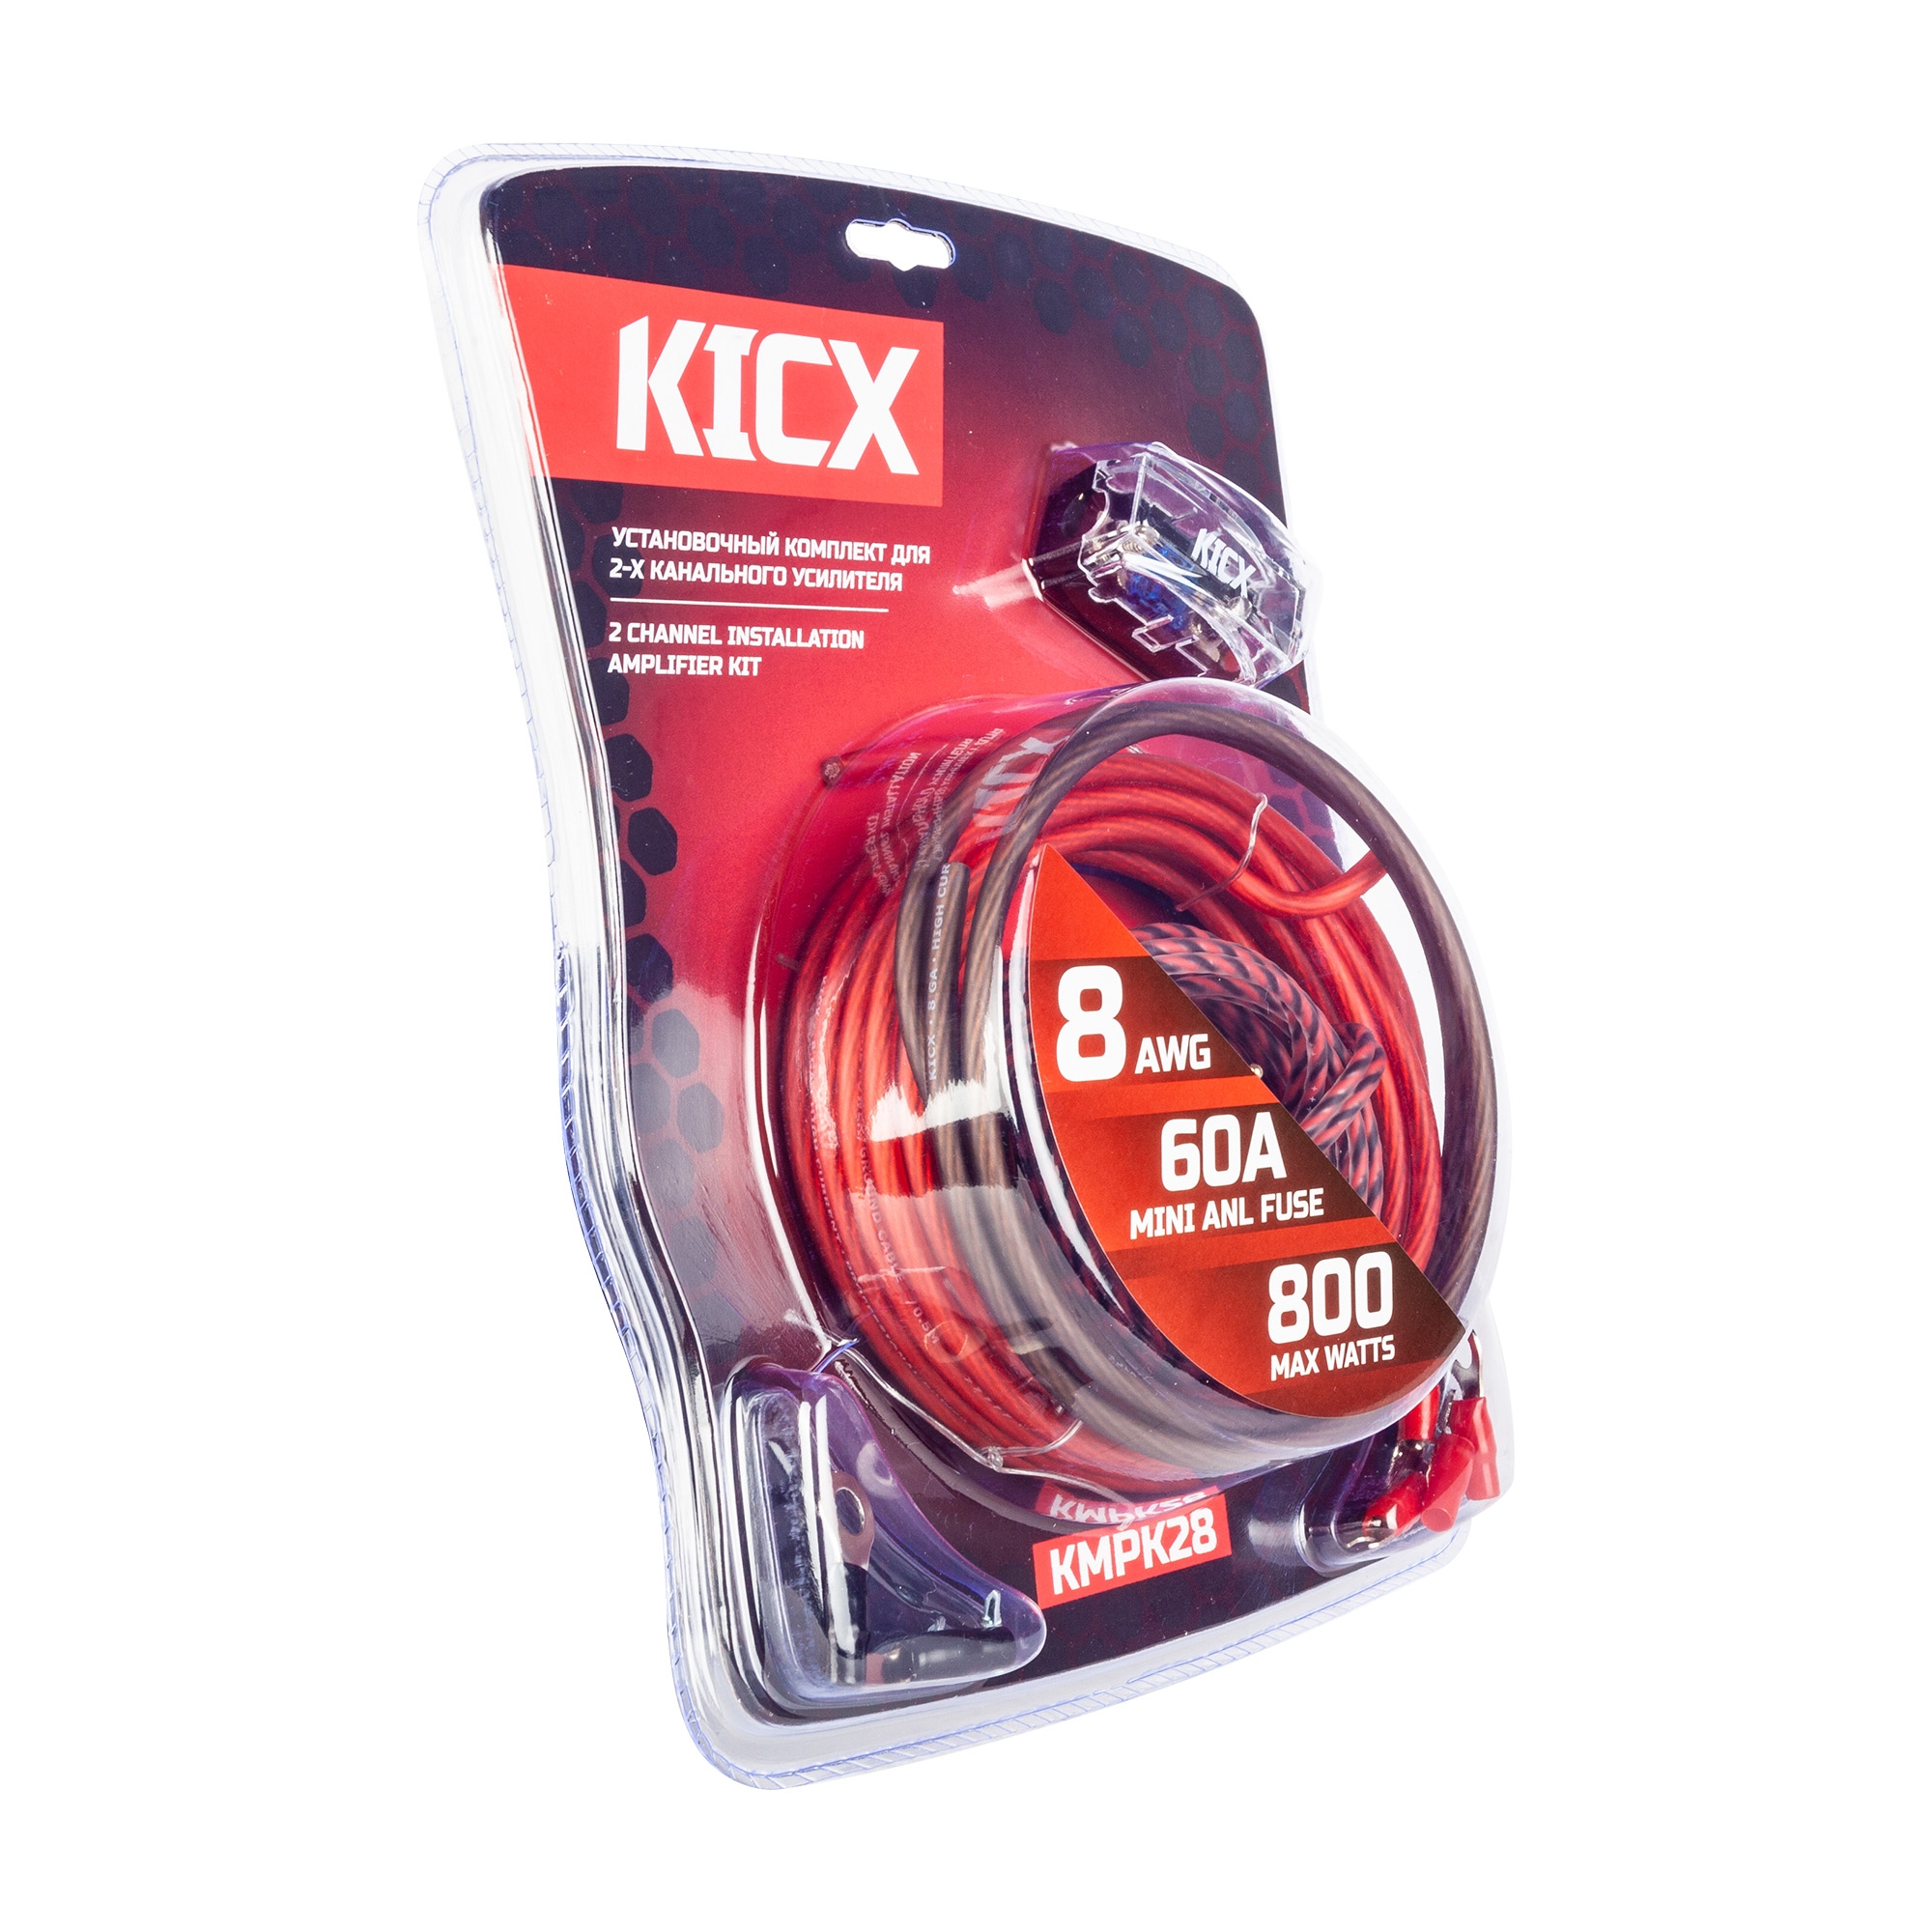 Kicx KMPK28 кабель для усилителя (комплект)